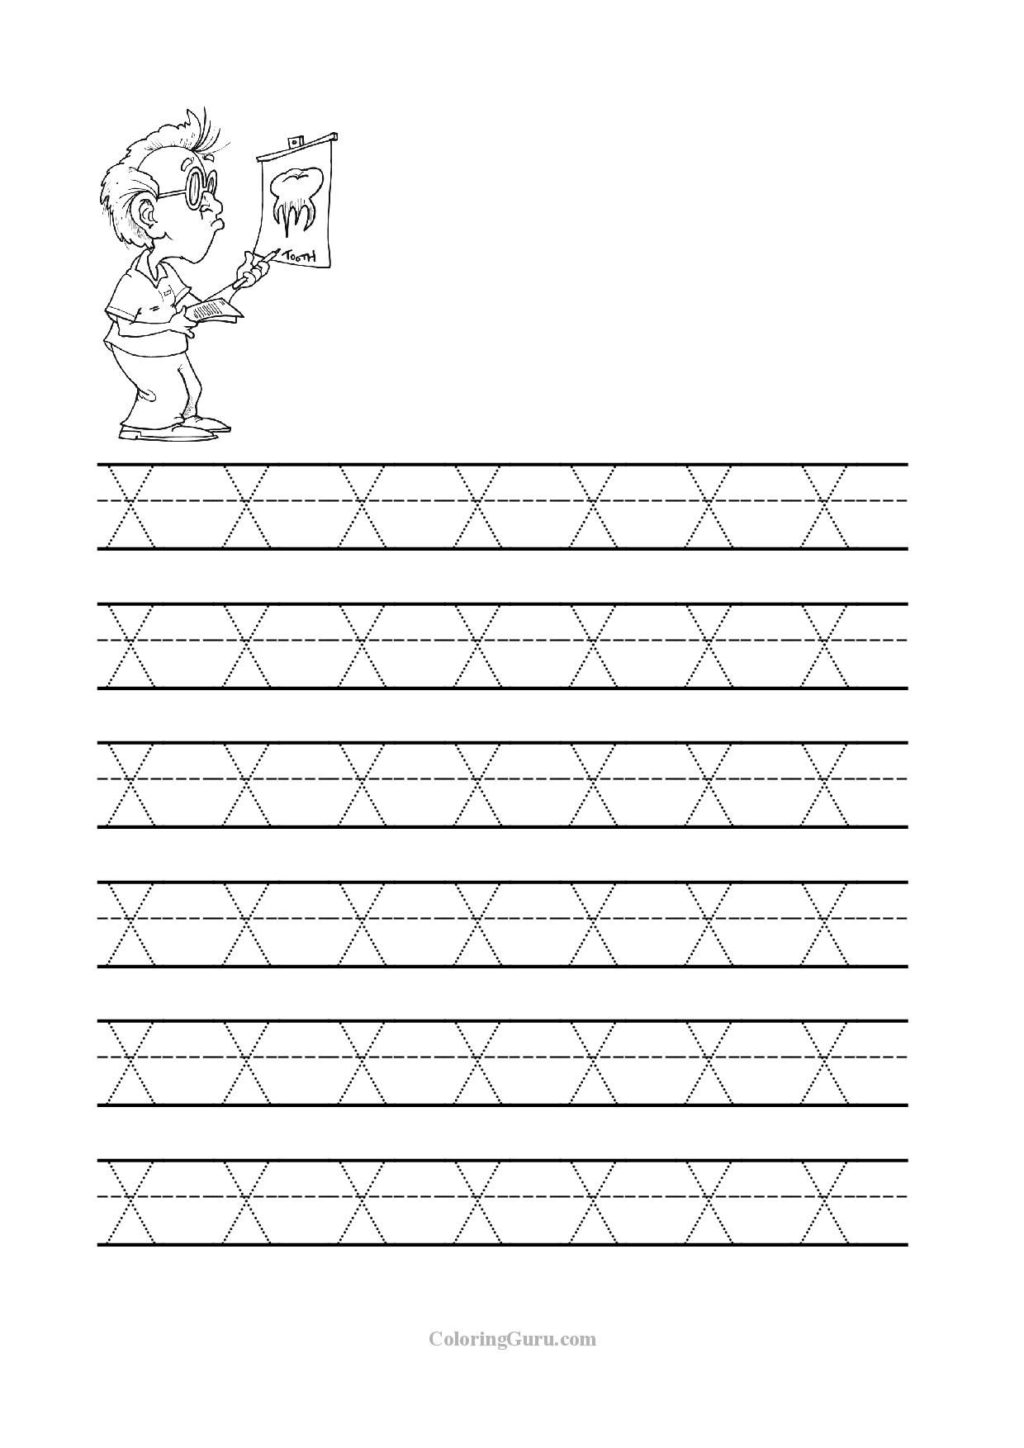 Worksheet ~ Printable Prek Worksheets Image Inspirations inside Letter Tracing X